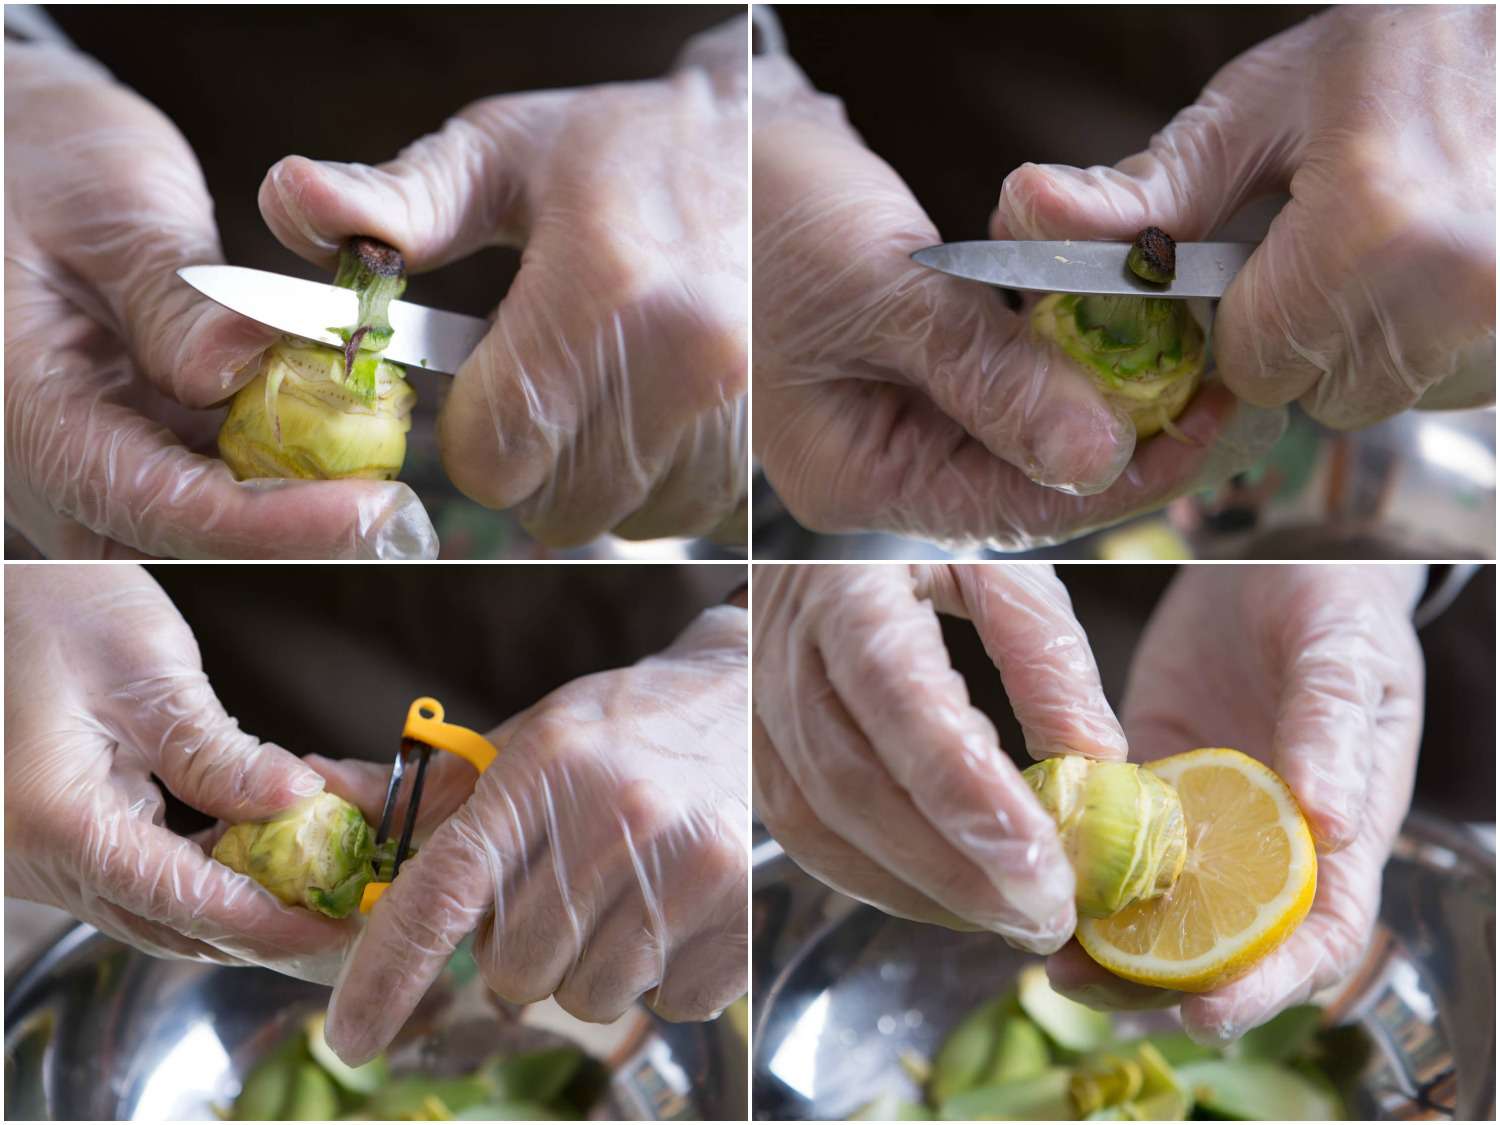 在洗干净的小朝鲜蓟上拼贴修剪茎:用削皮刀切下坚韧的绿色茎，用y形削皮器削皮，用柠檬擦干净的朝鲜蓟